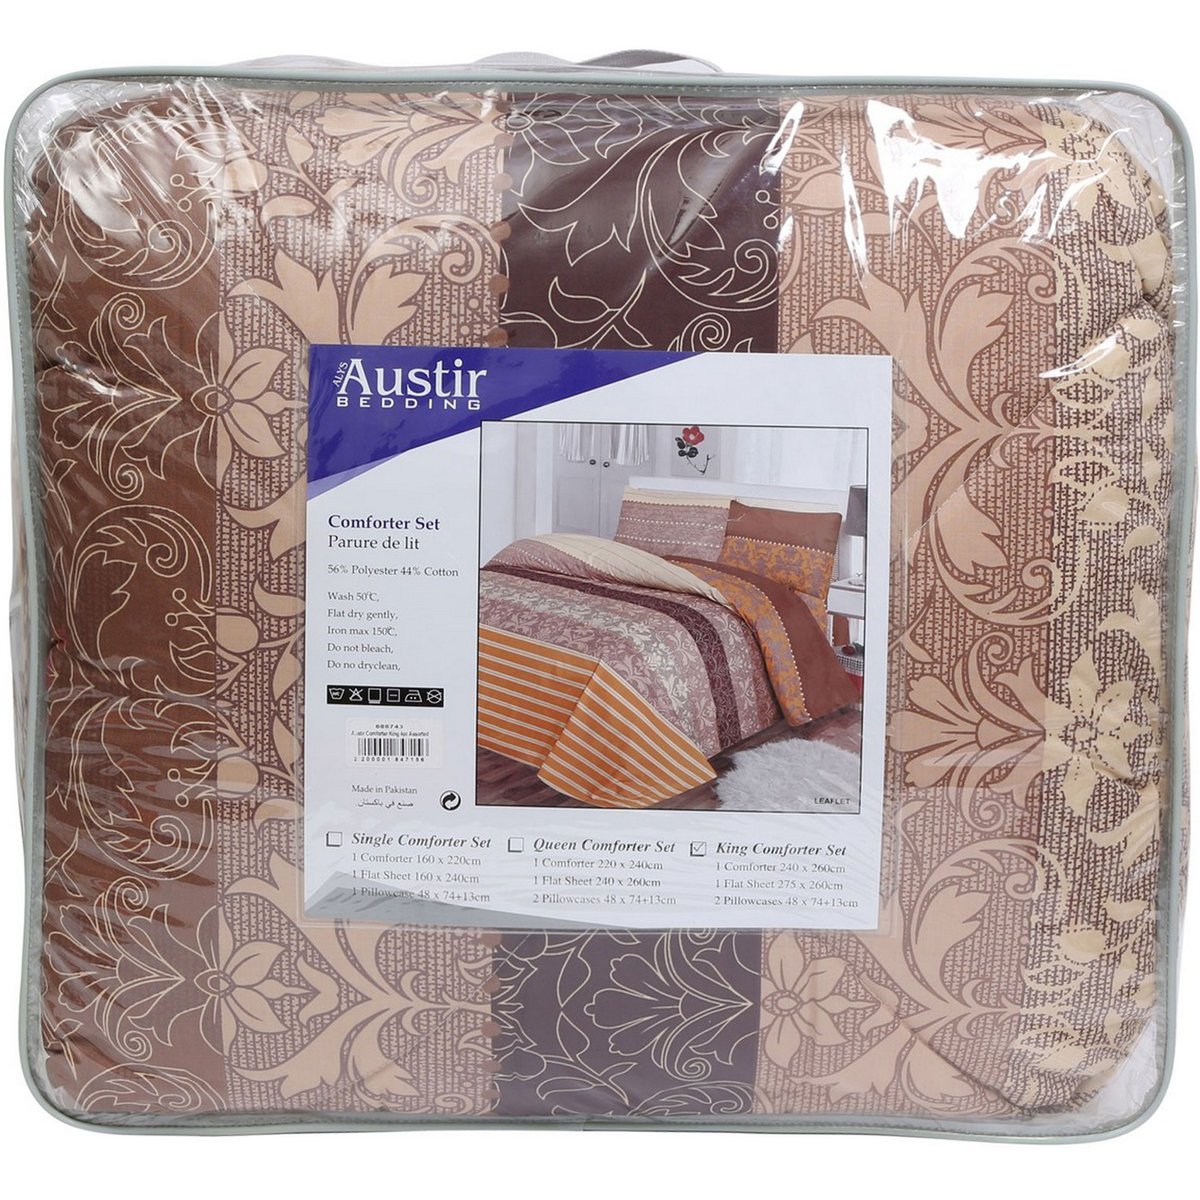 Austir Comforter King 4pcs Set 240x260cm Leaflet